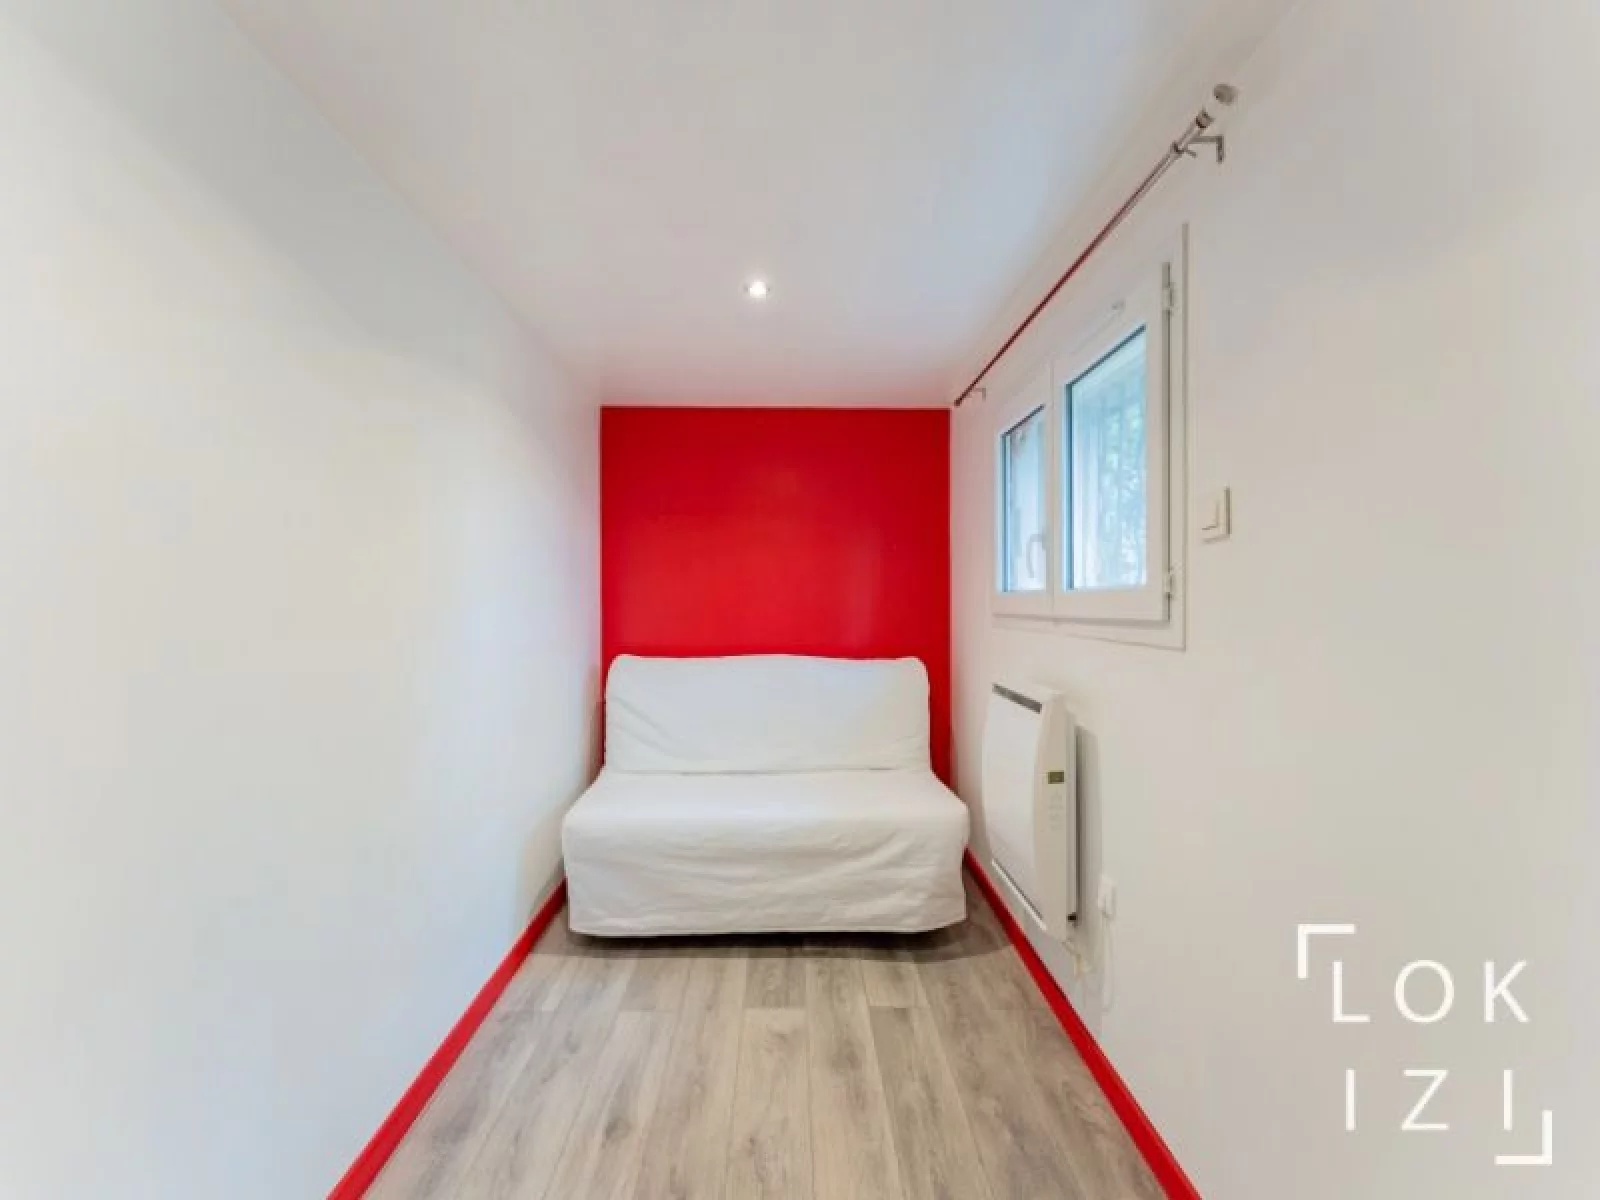 Location appartement meublé 3 pièces 49m² (Marseille - 11ème)